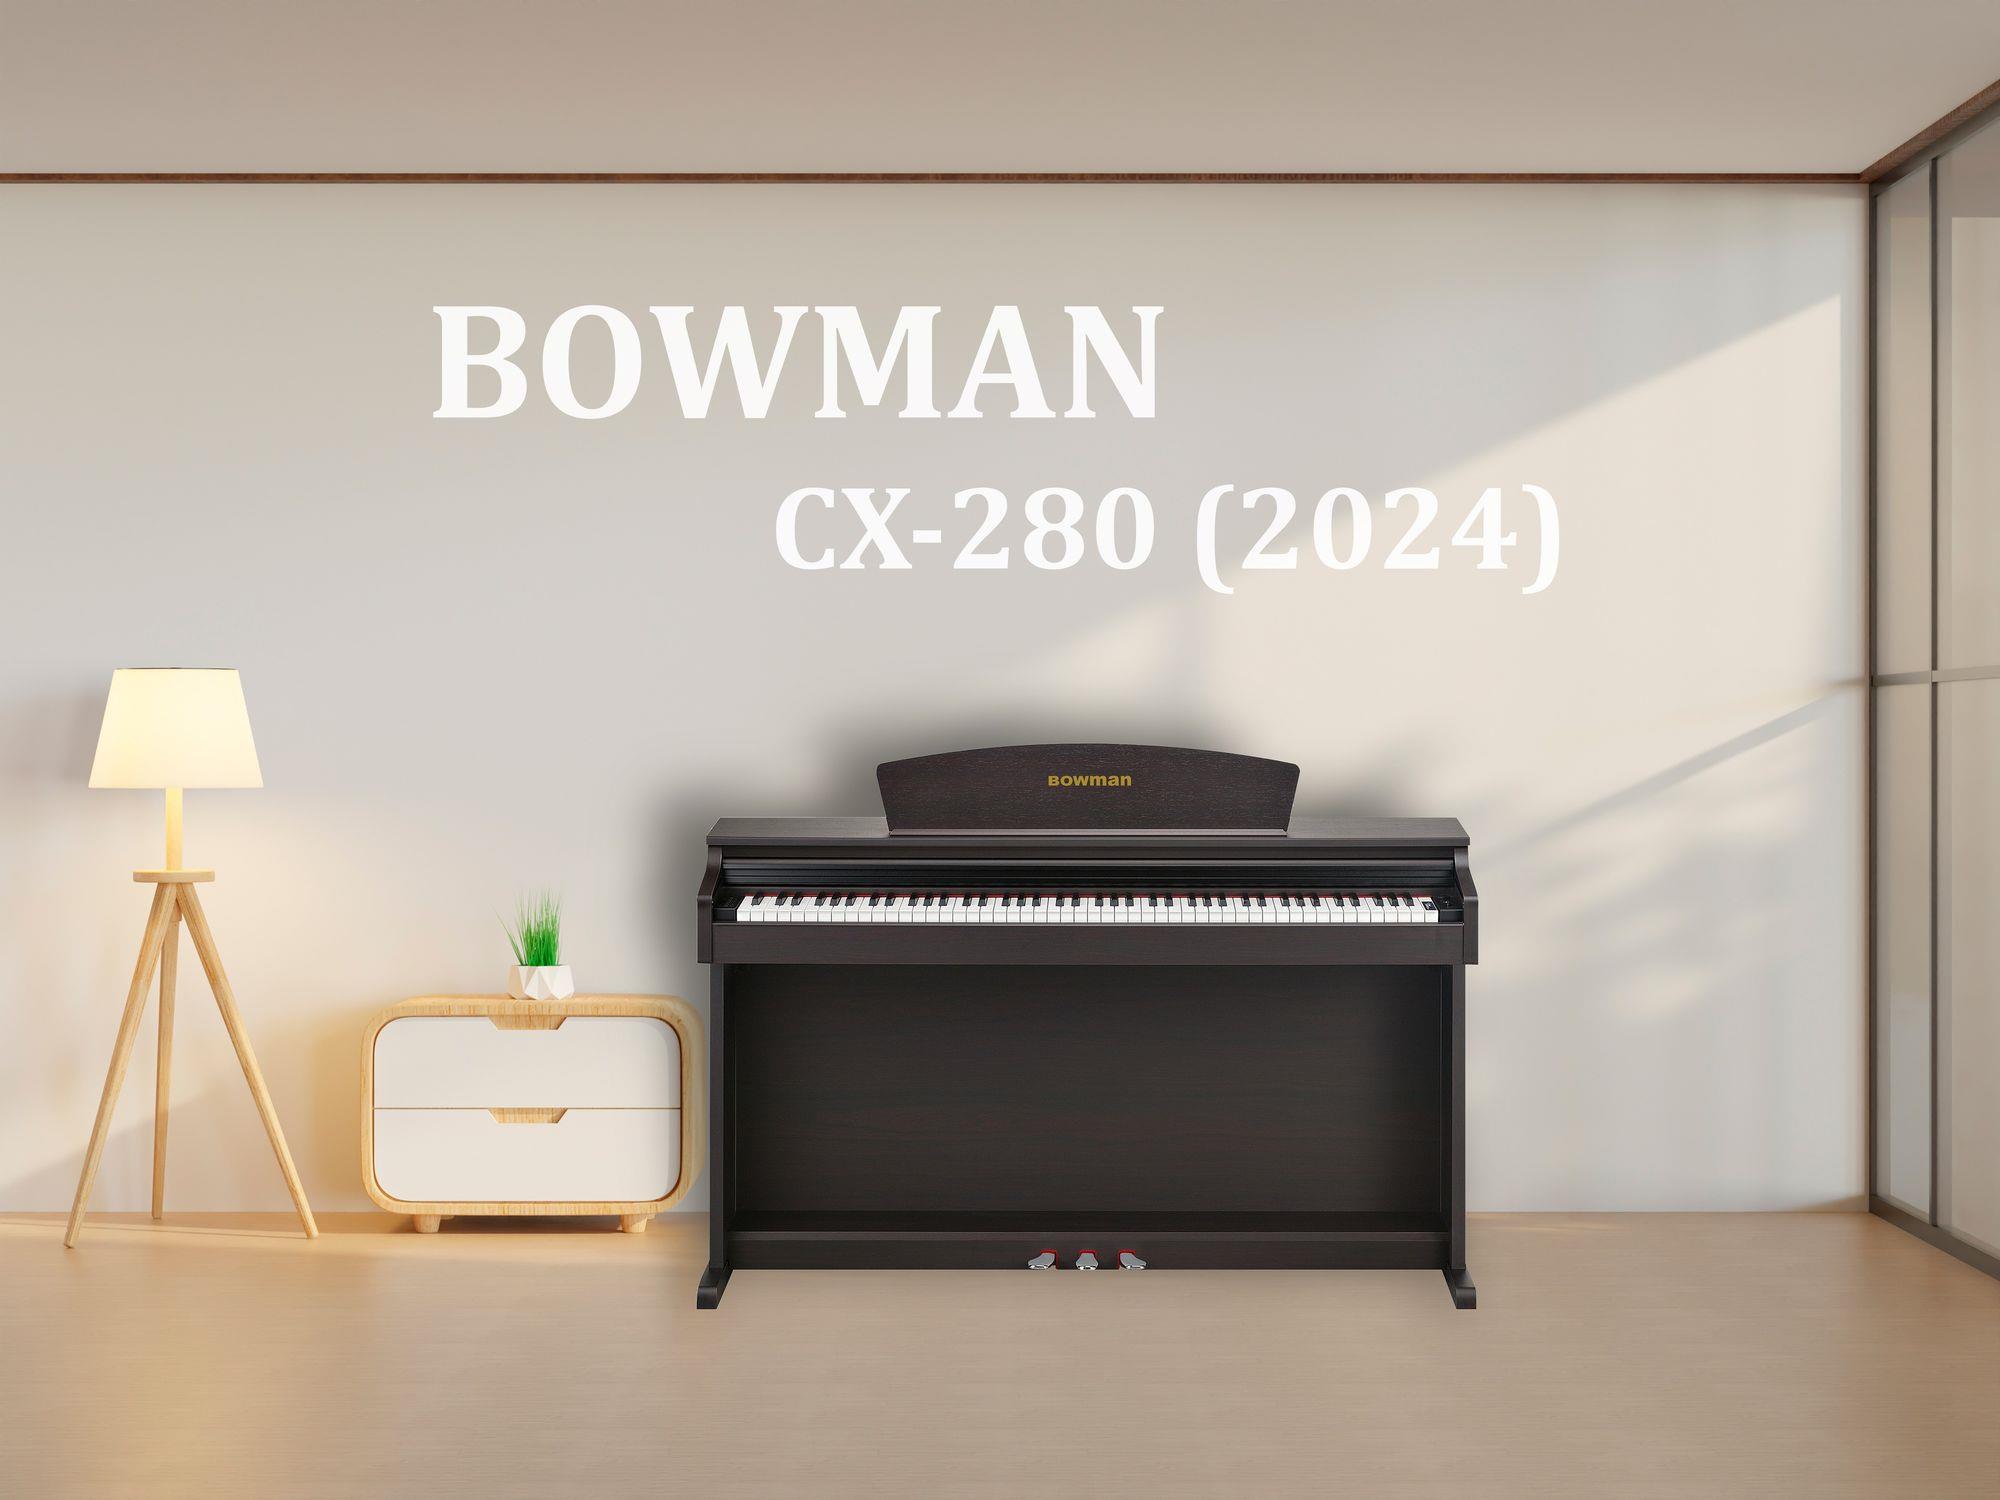 BOWMAN CX-280 SR (2024)